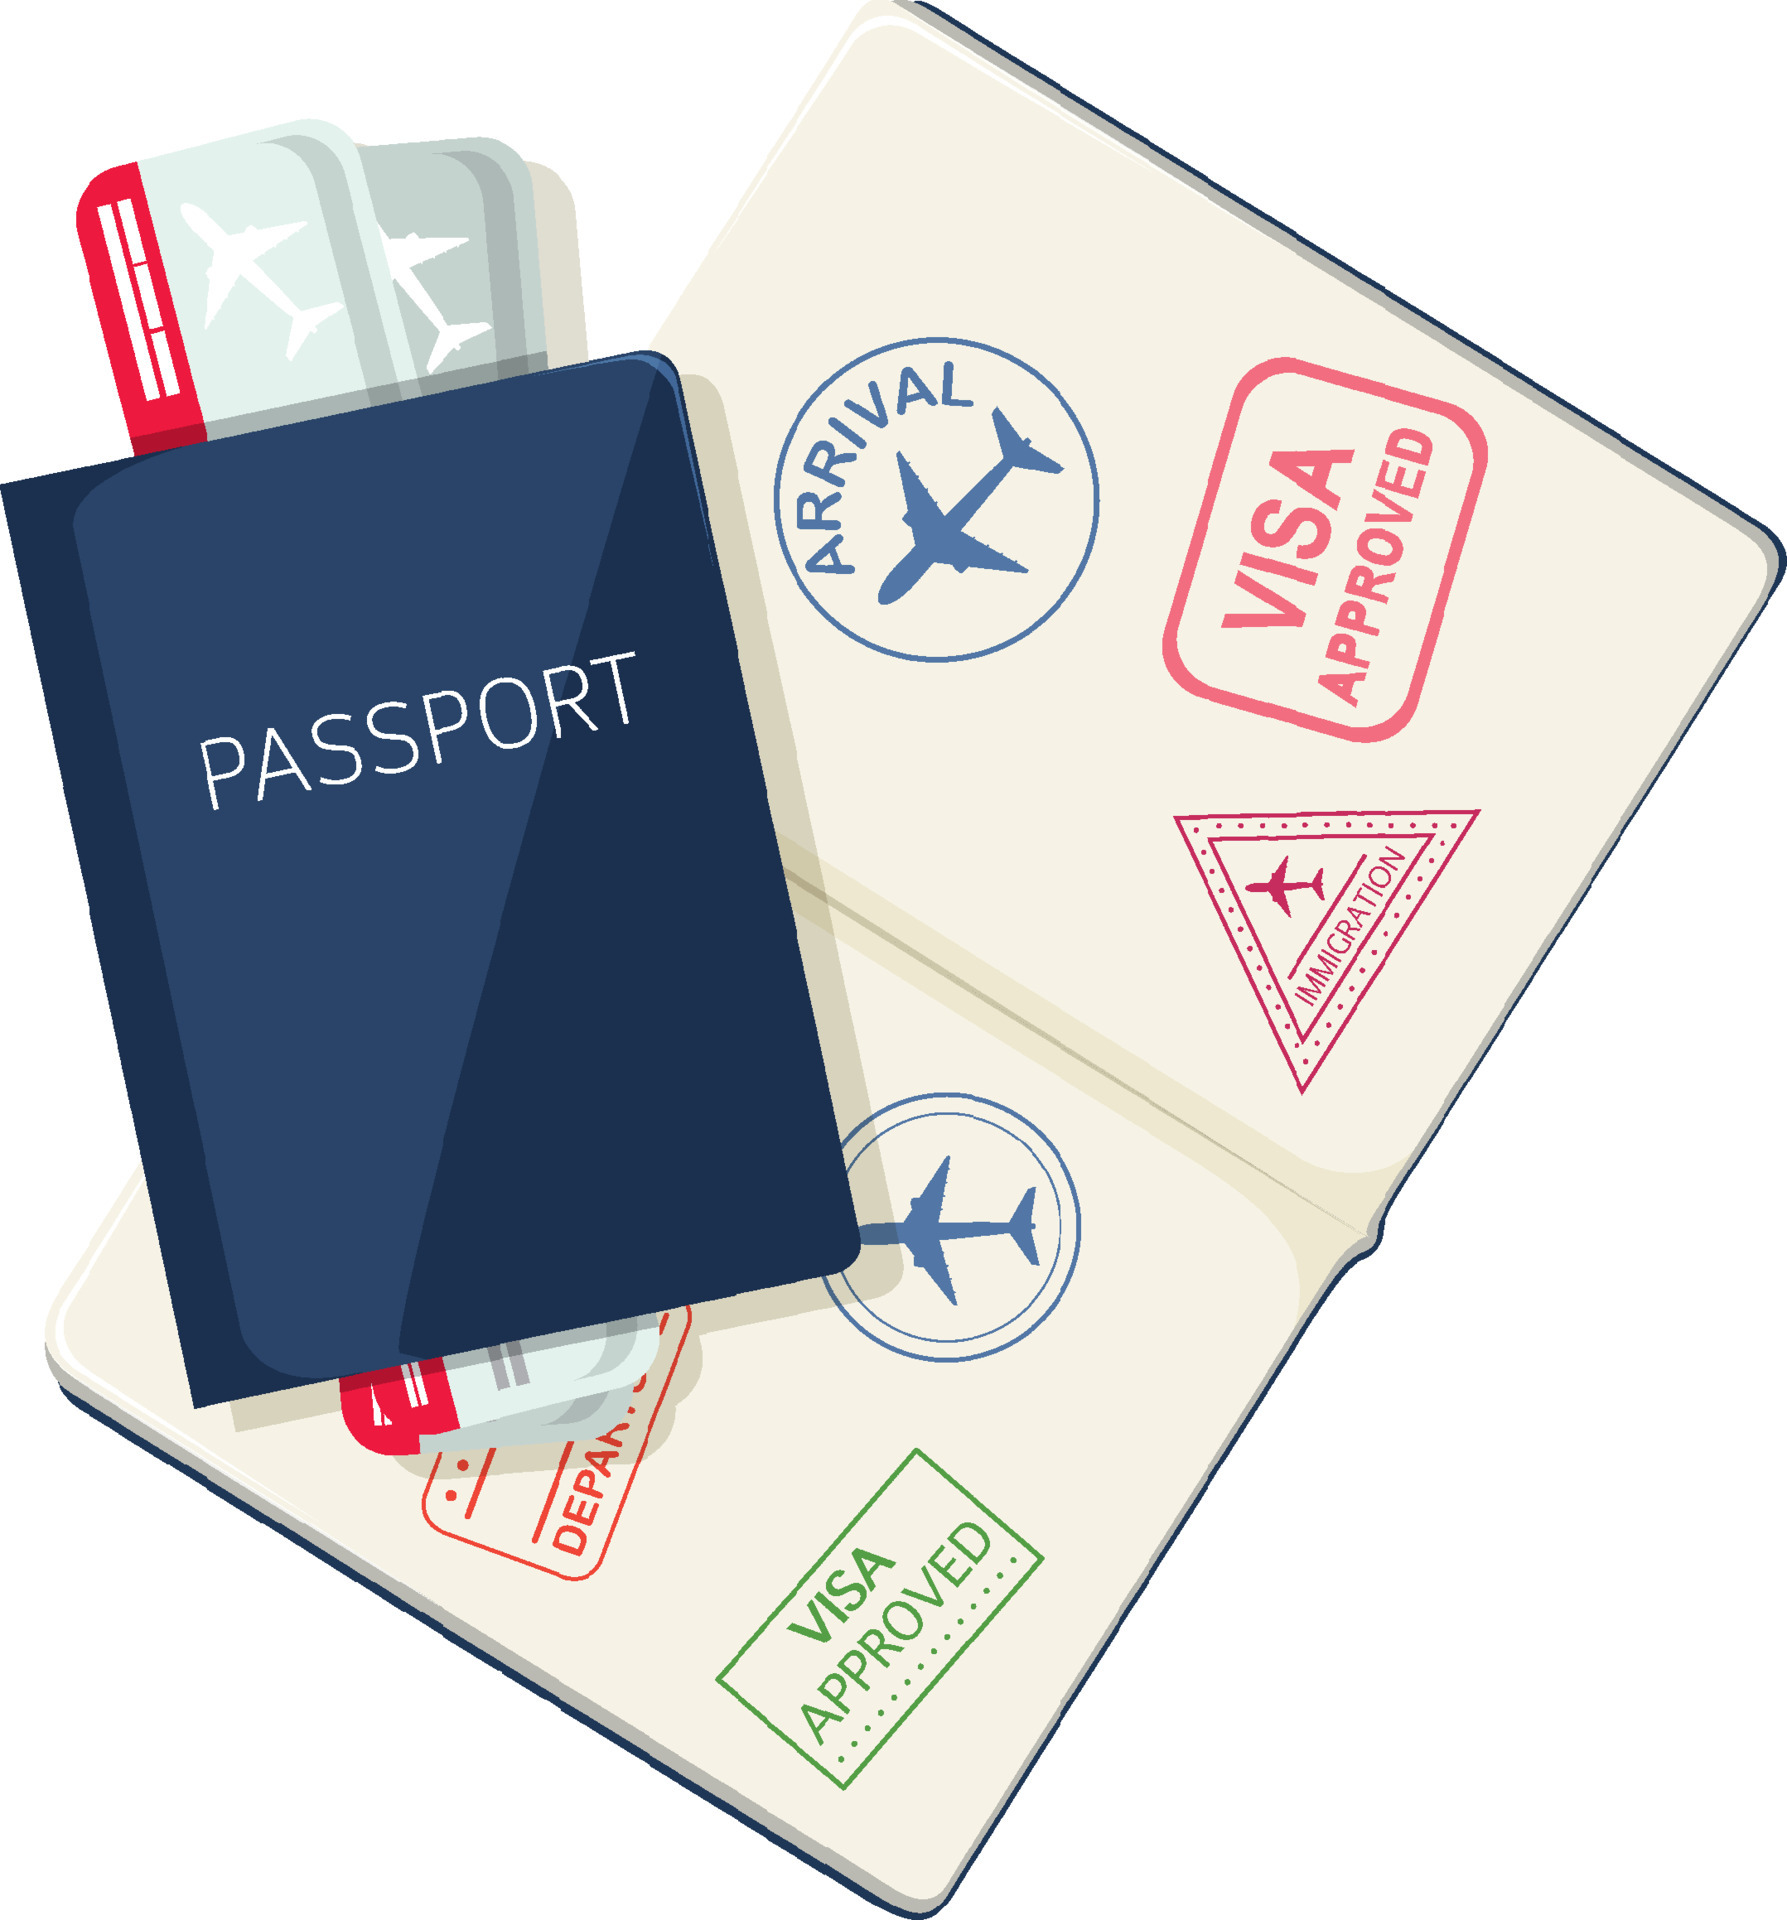 Hộ chiếu và vé máy bay: Chúng tôi hiểu rằng việc sắp xếp chuyến đi là một quá trình phức tạp. Vì thế, để giúp bạn tiết kiệm thời gian và nỗ lực, chúng tôi cung cấp bộ sưu tập hình ảnh hộ chiếu và vé máy bay chất lượng cao để giúp bạn chuẩn bị tốt nhất cho chuyến đi sắp tới của mình.